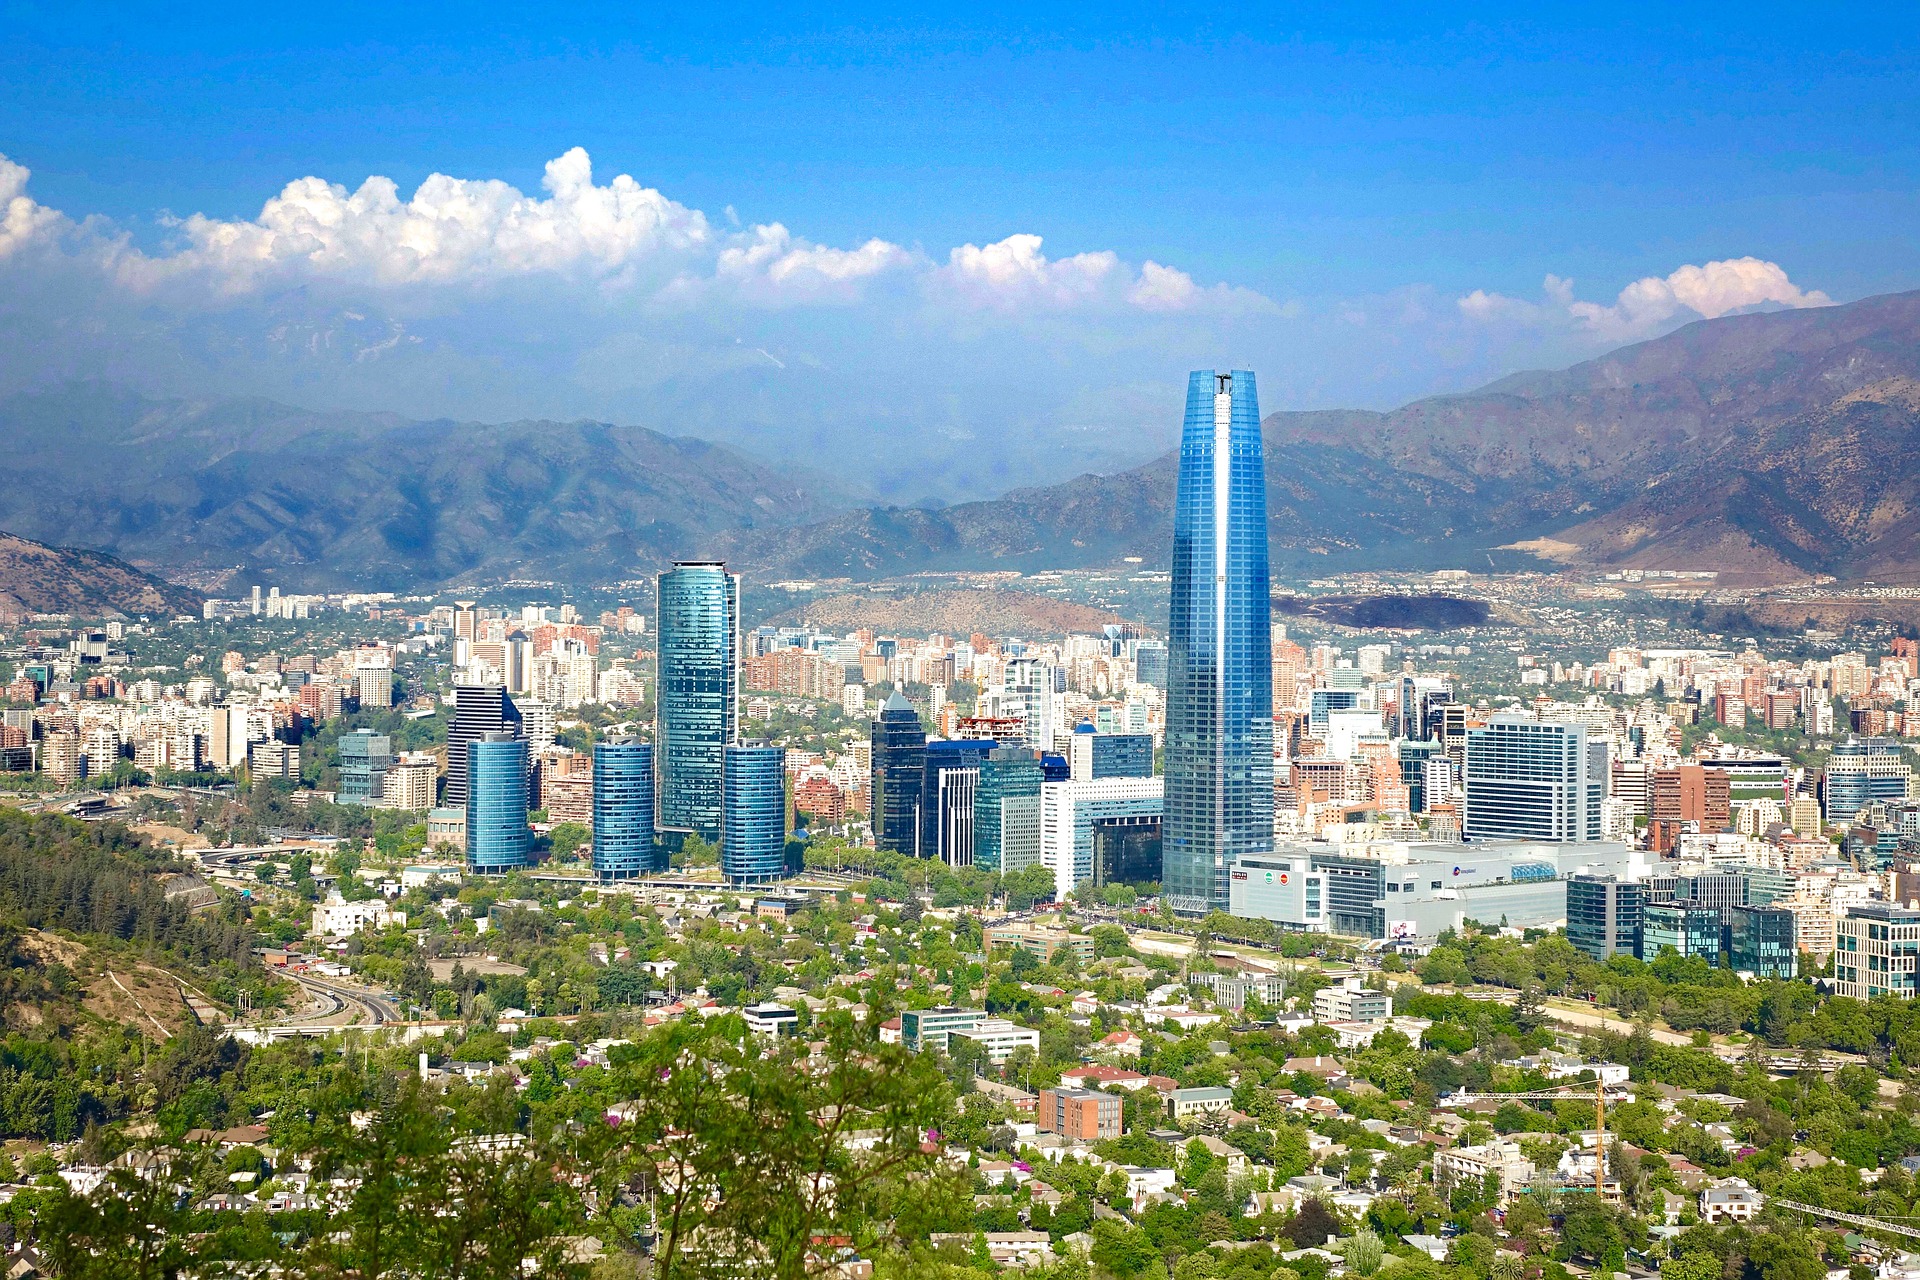 Destination image of Santiago (Chile)